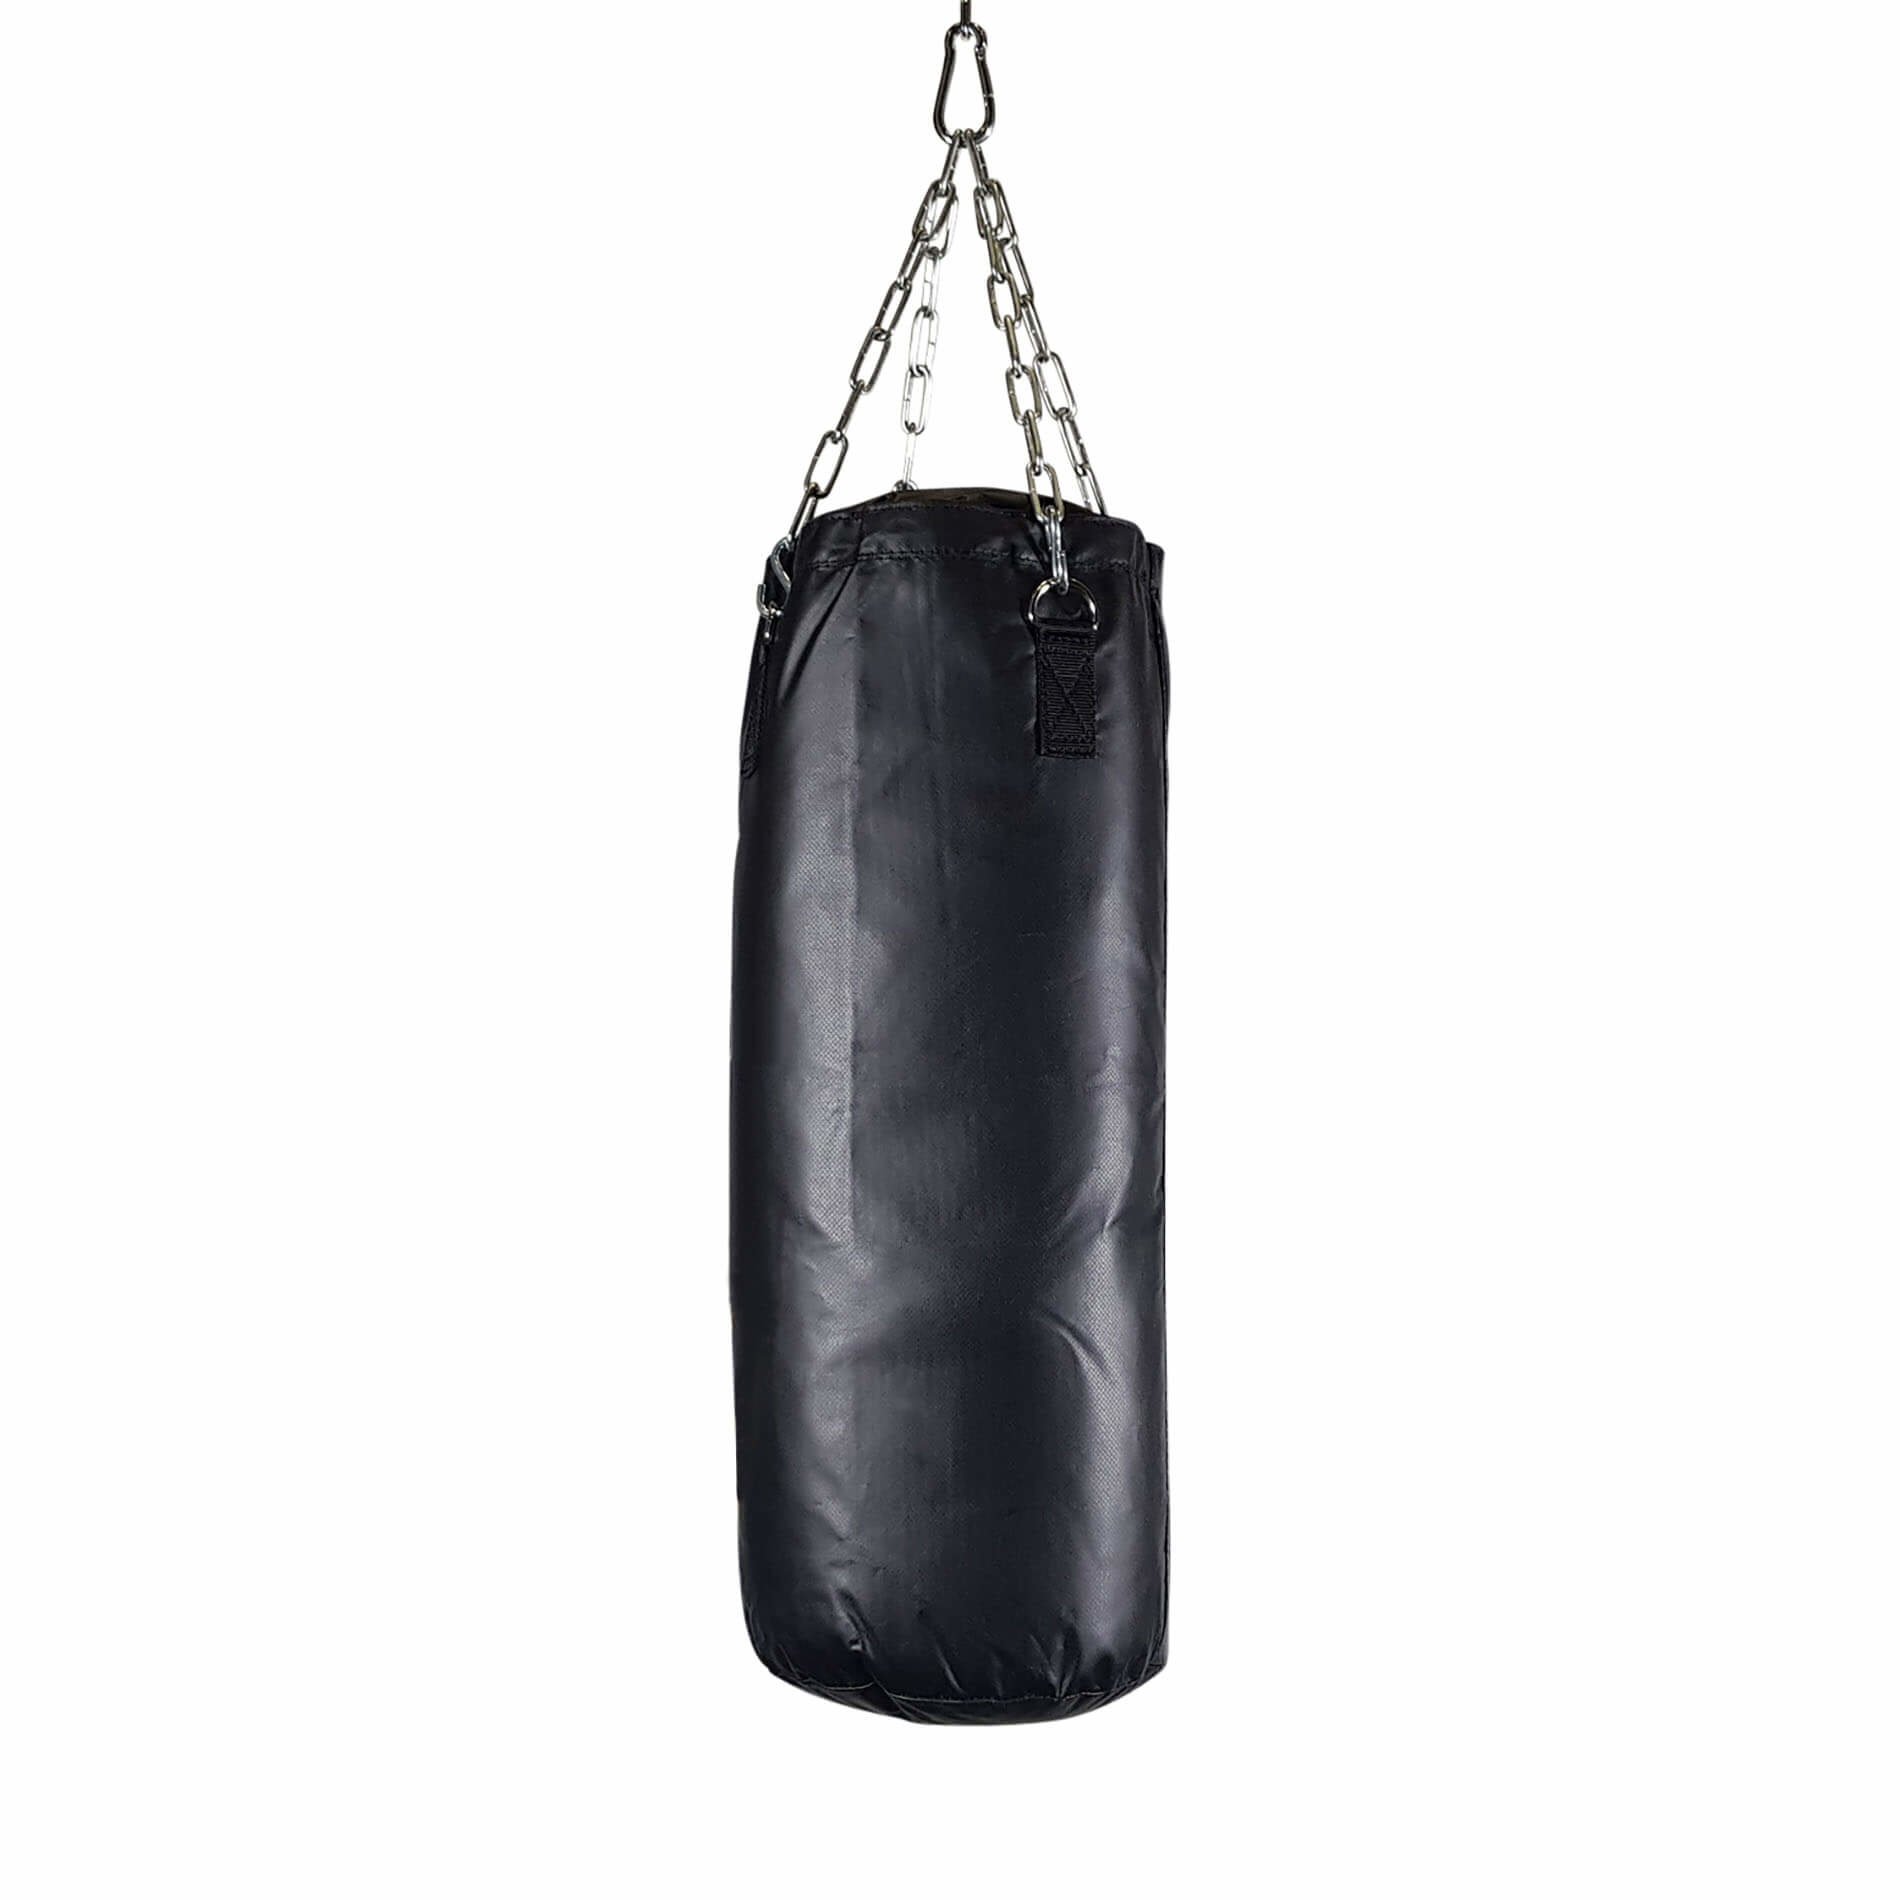 Boxing bag Knockout 180/50cm 70kg 